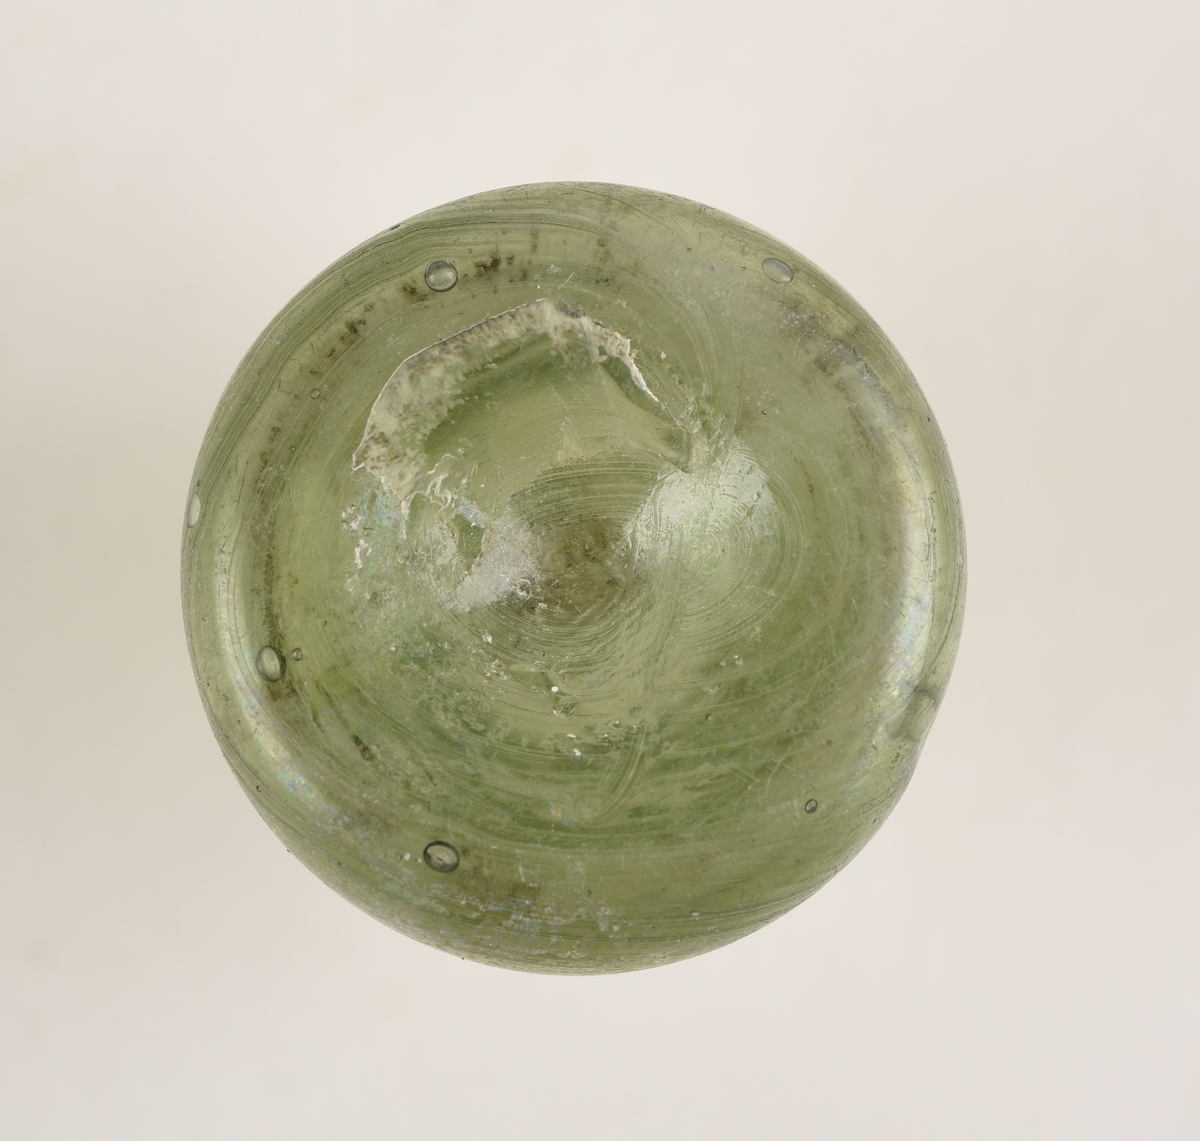 Sylindriskformet glassflaske. Deler av randen mangler. På toppen av flasken er det et sirkelformet hull. Hullet har en diameter på 1,2 cm. Flasken er lys grønn i farge.